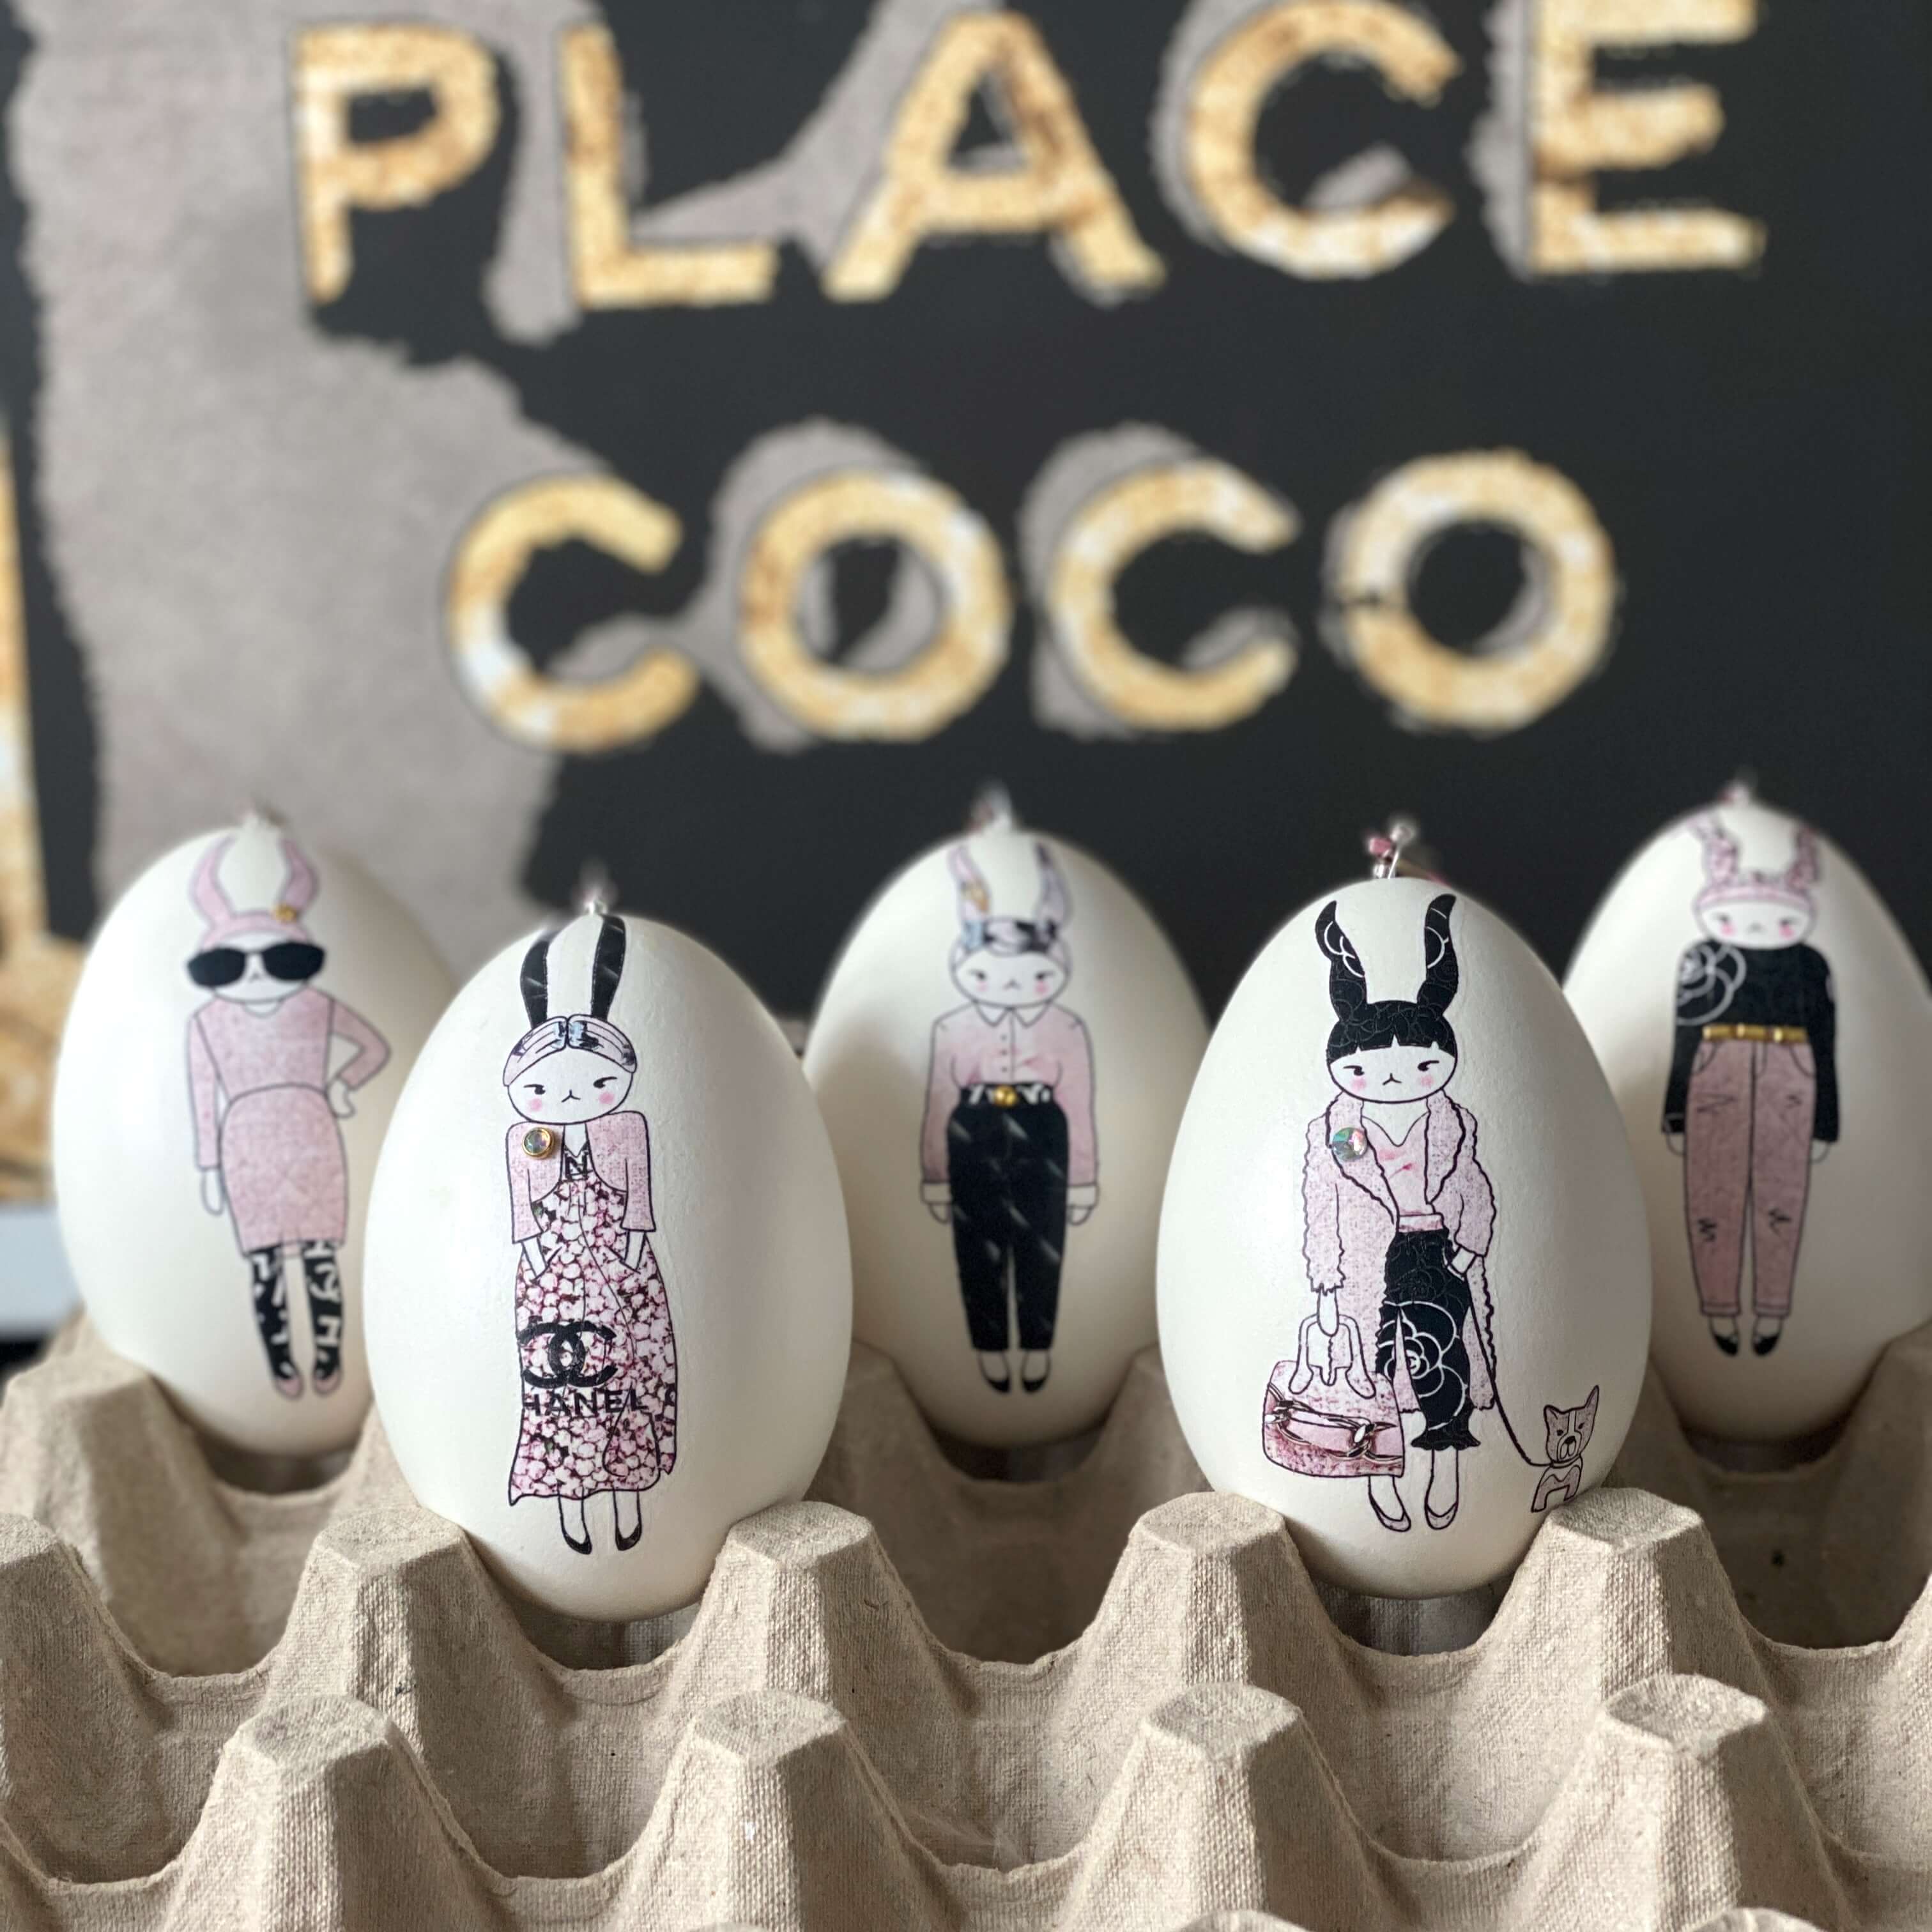 – auf Eier Ostereier-Deko: Echte Kunst ei-nzigartig trifft